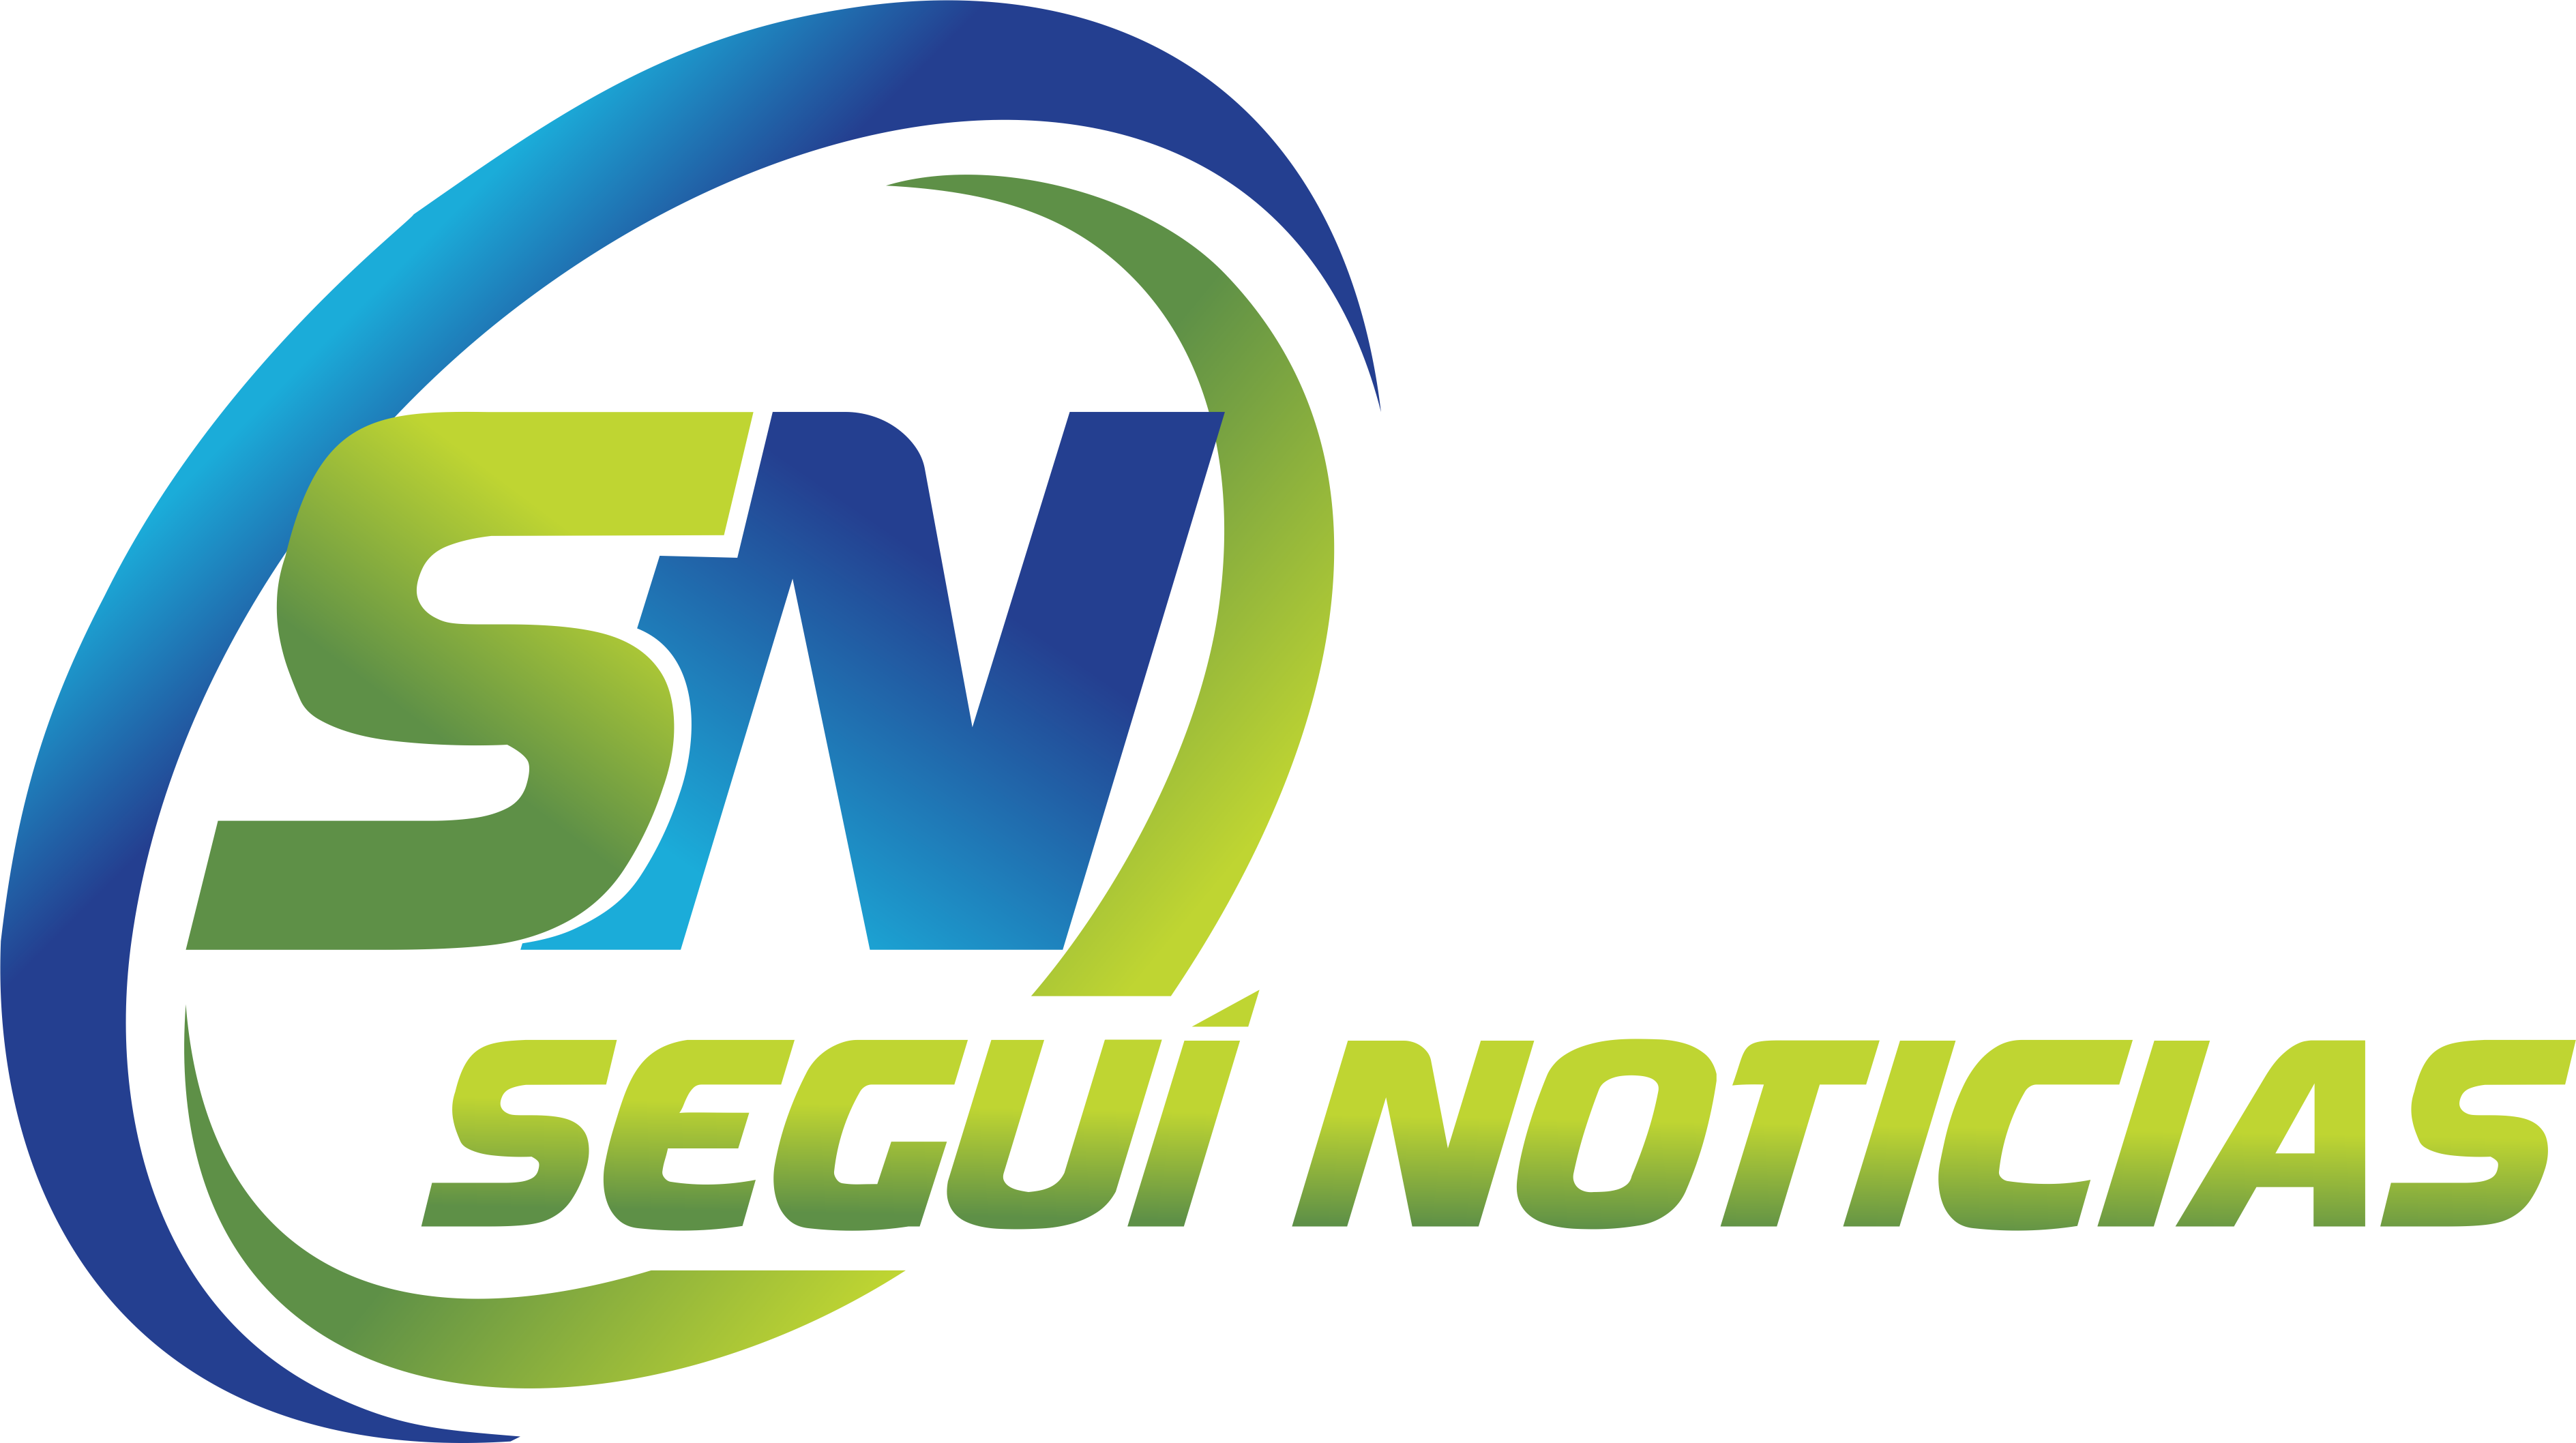 Seguí Noticias | Noticias de Seguí y la región